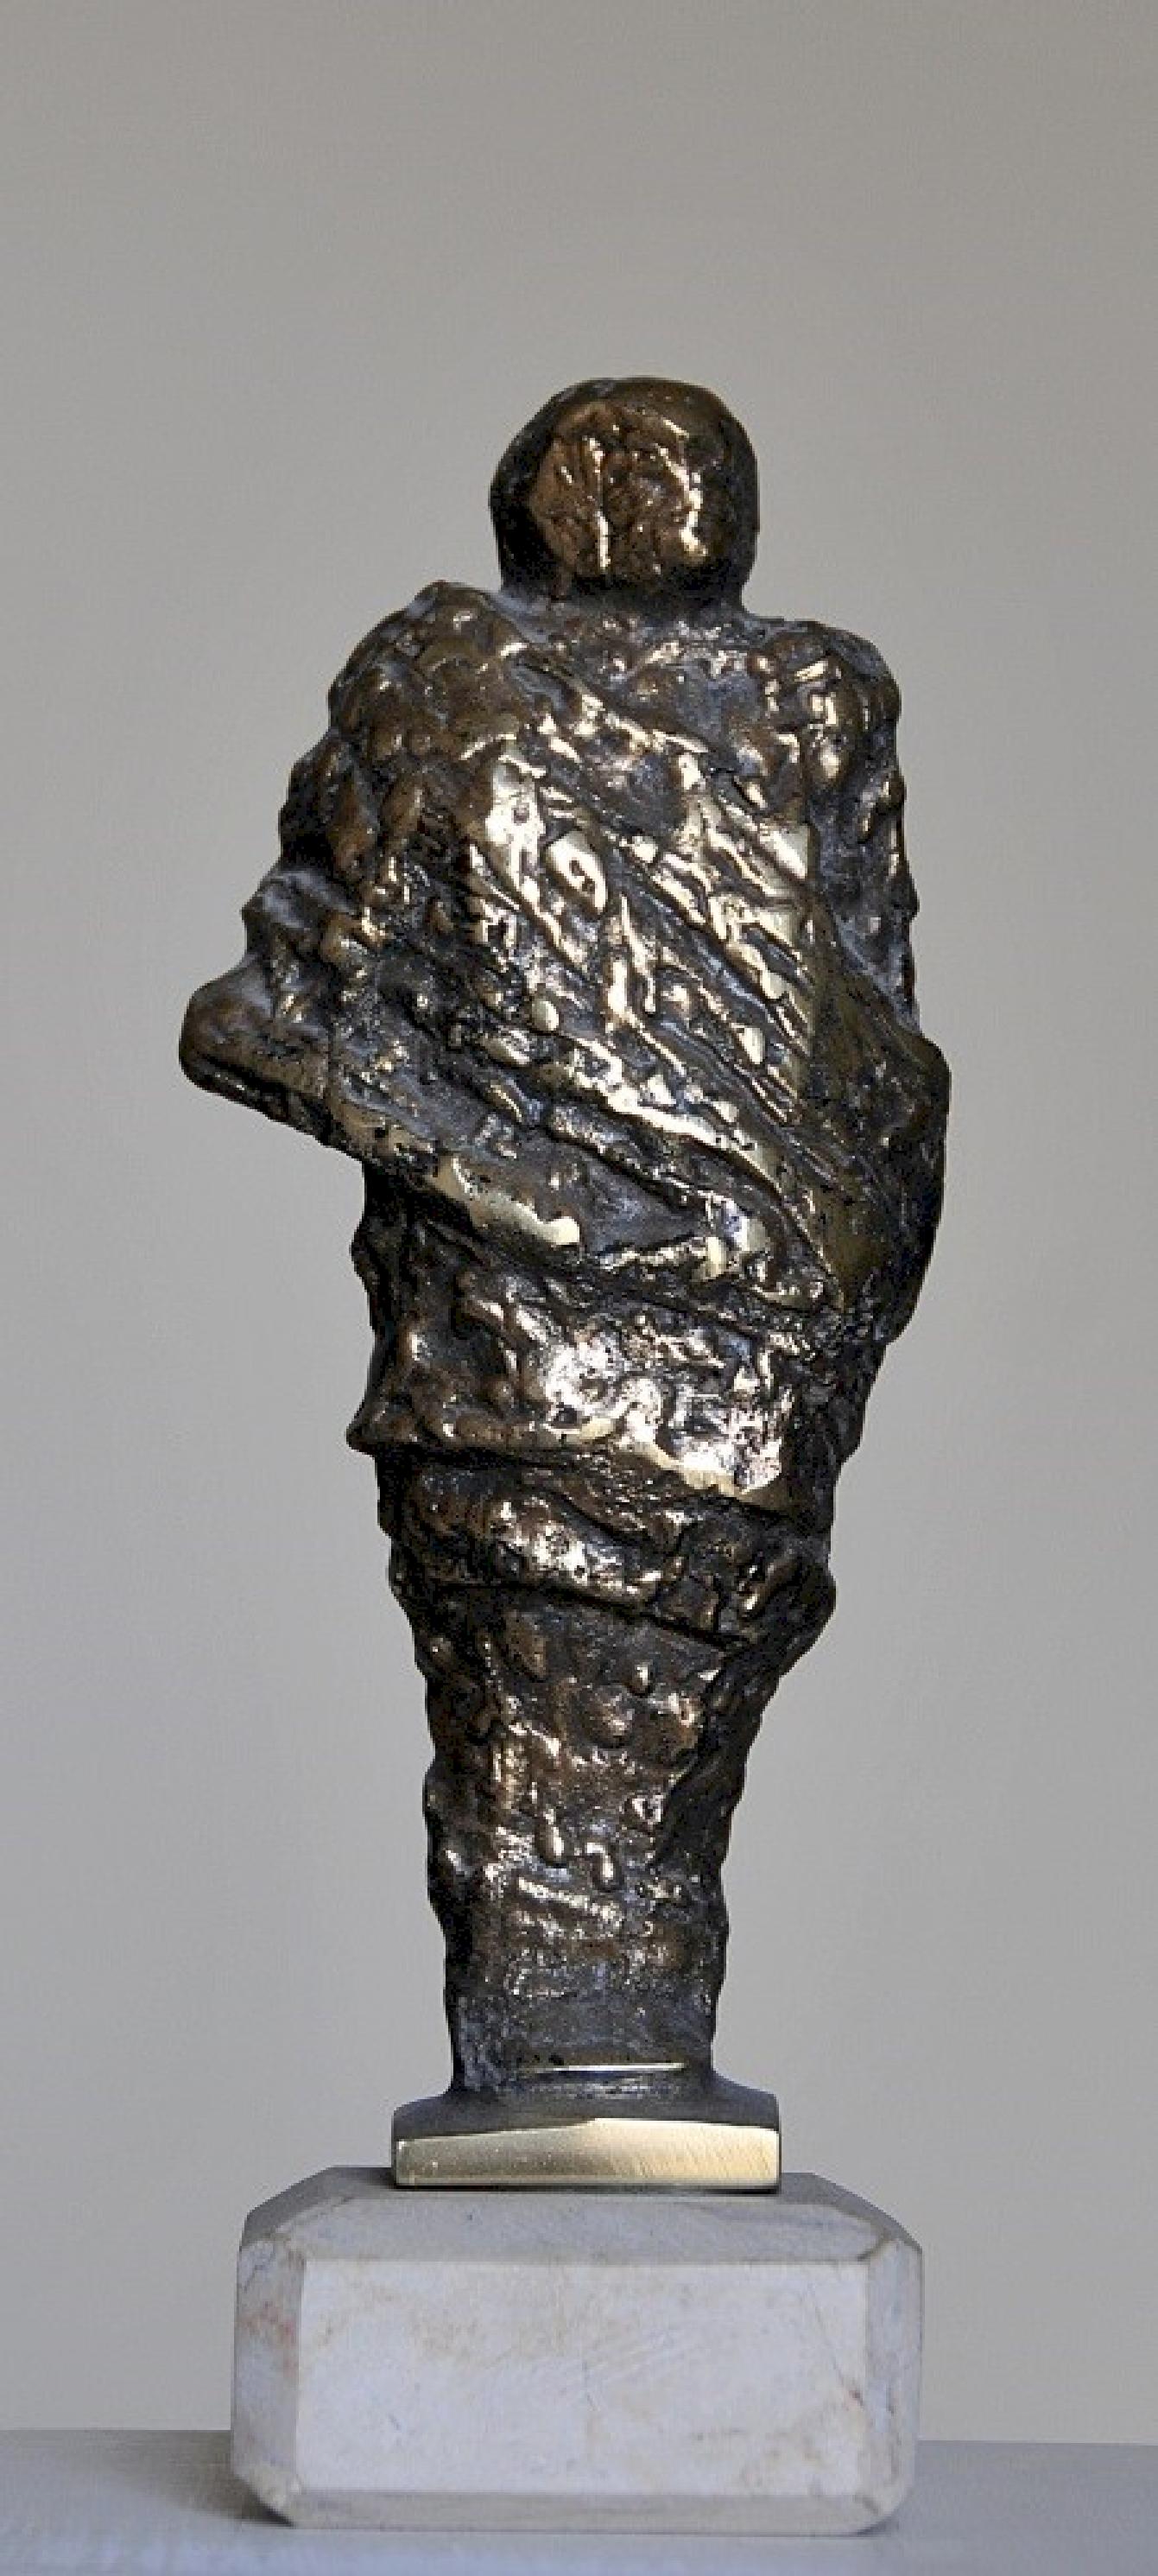 „Robed IV“ Bronzeskulptur 9,5" x 4" x 3" Zoll von Sarkis Tossonian

Sarkis Tossoonian wurde 1953 in Alexandria geboren. Er schloss sein Studium an der Fakultät für Bildende Künste/Bildhauerei 1979 ab. Seit 1980 und bis heute stellt er in Einzel- und